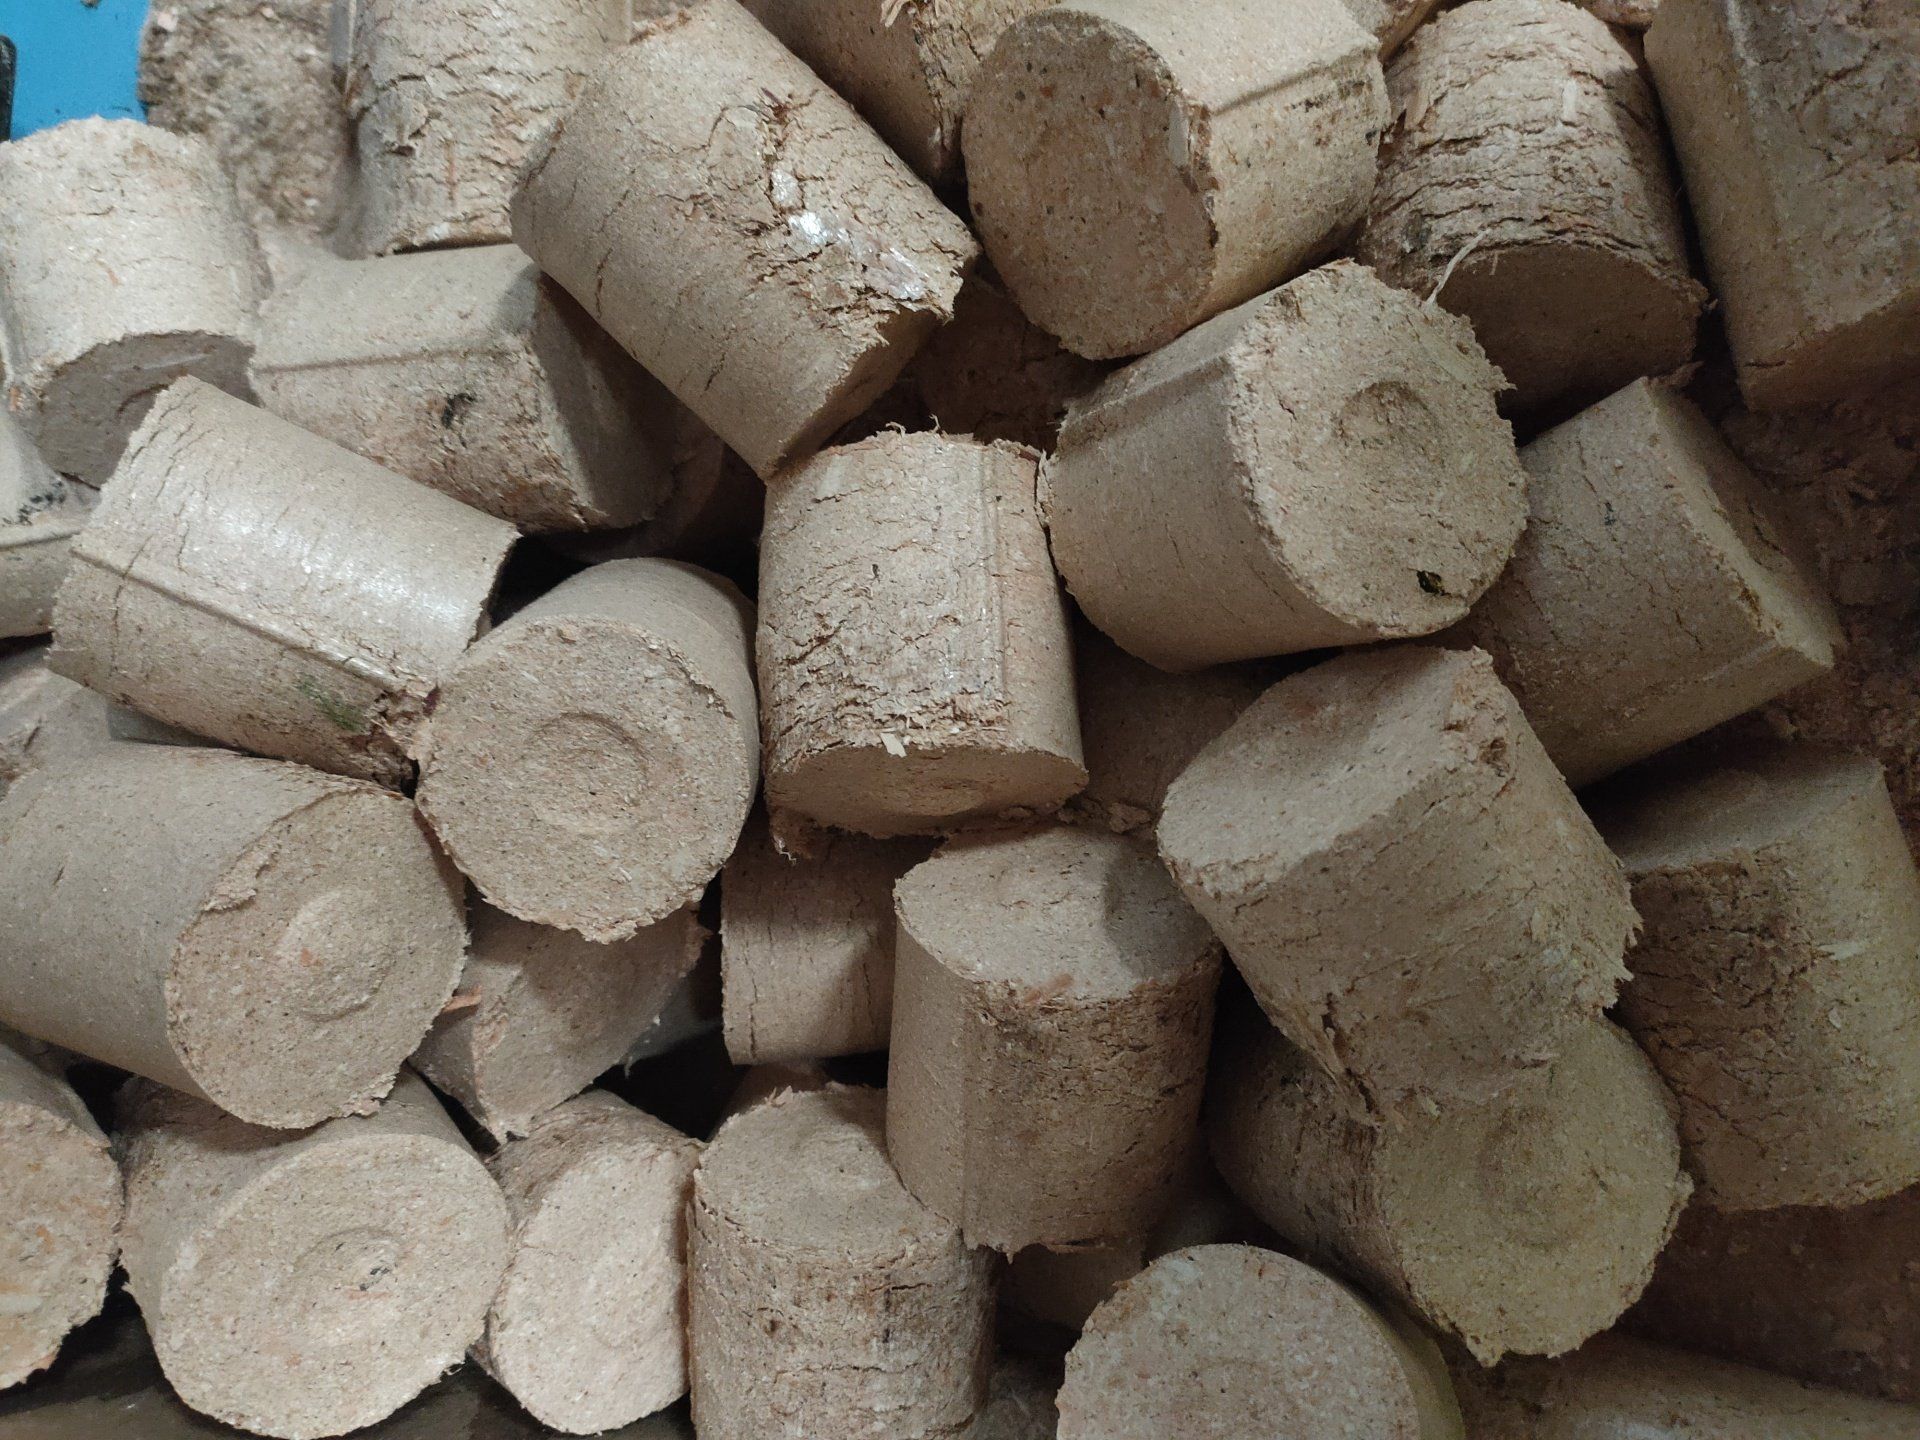 Wood briquettes